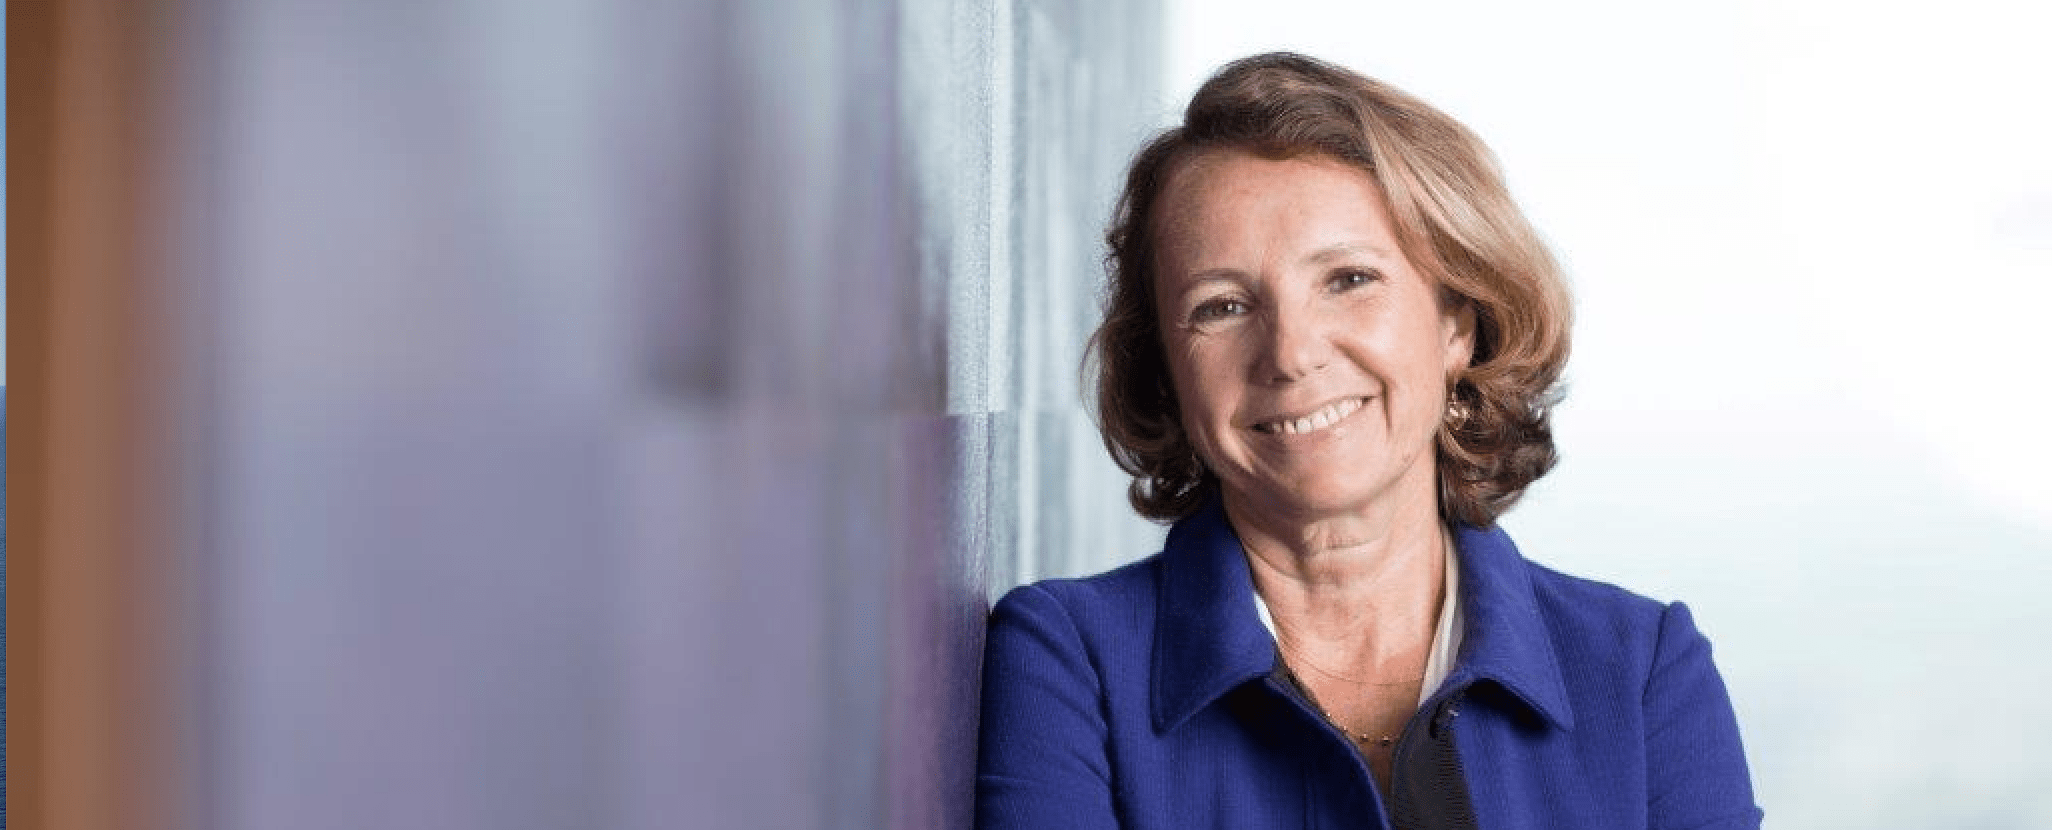 Marie-Ange Debon vymenovaná za výkonnú predsedníčku Keolis